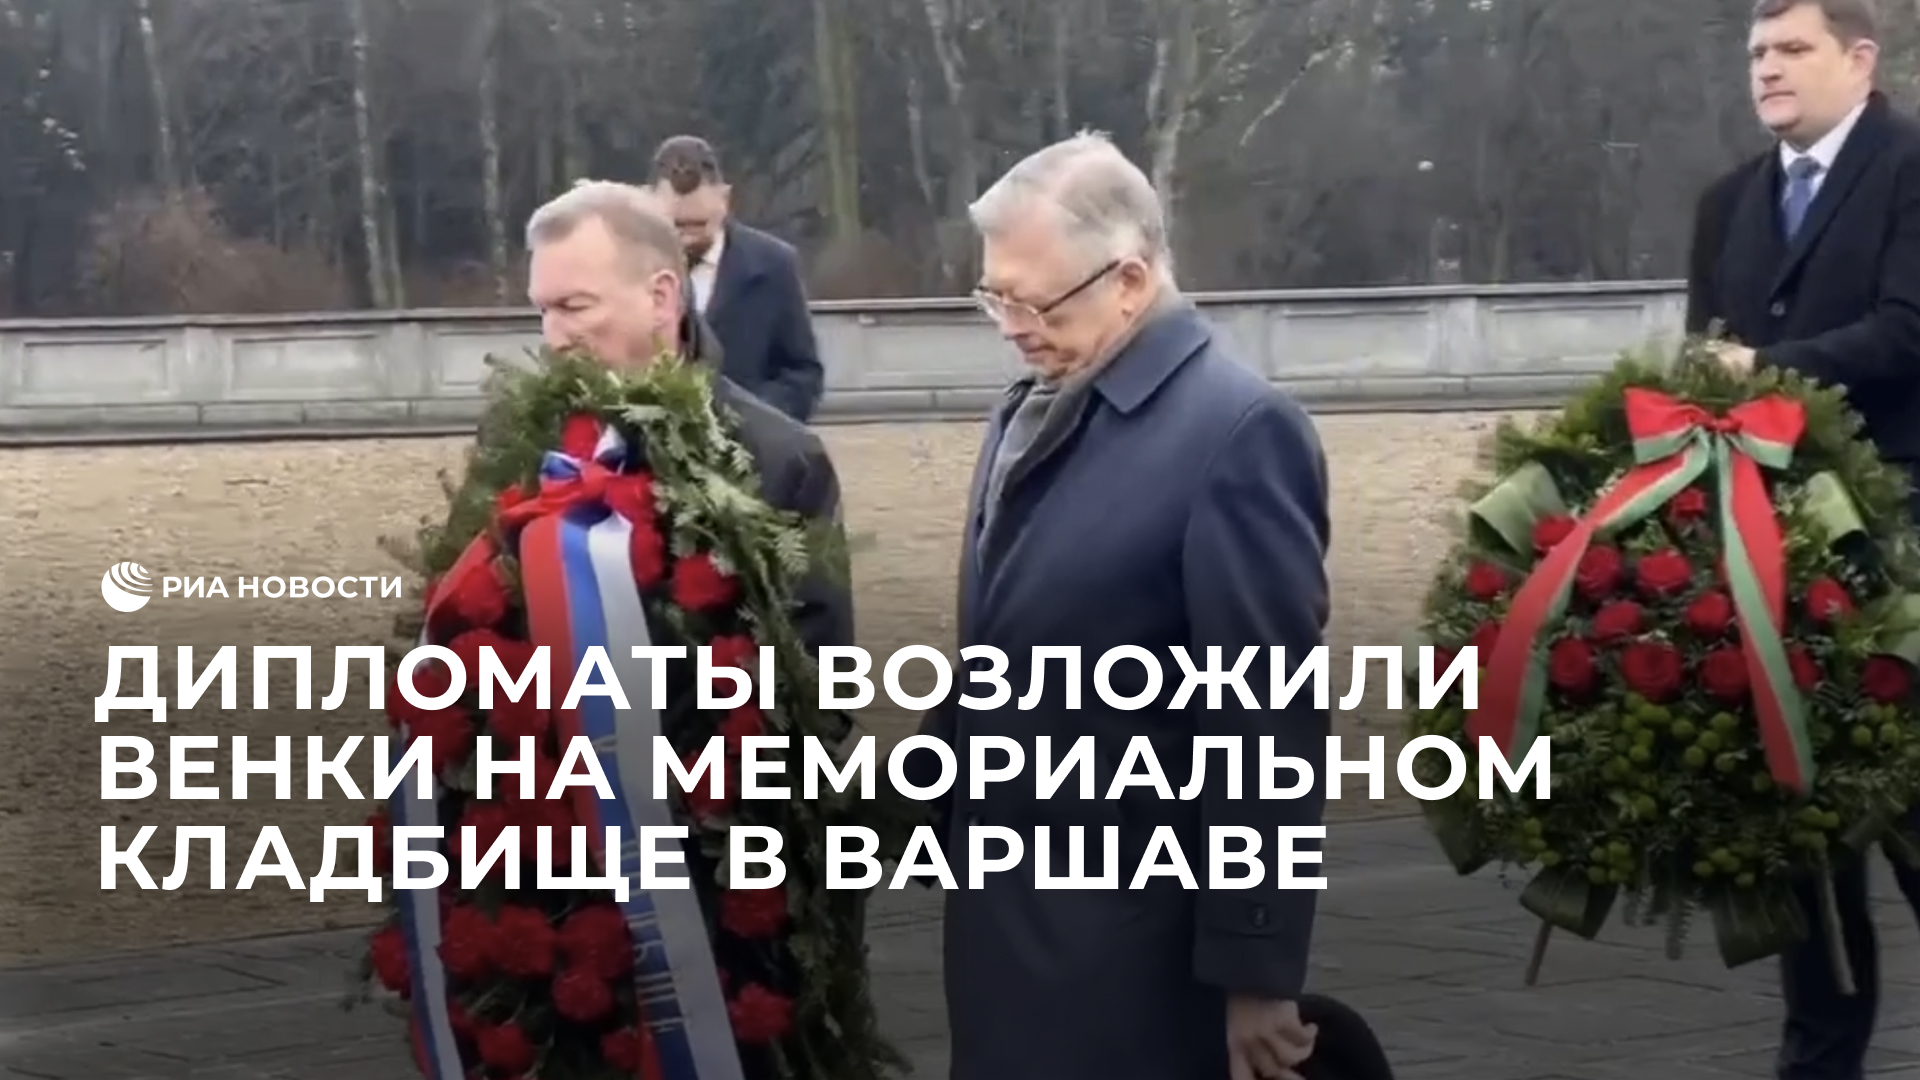 Дипломаты возложили венки на мемориальном кладбище в Варшаве